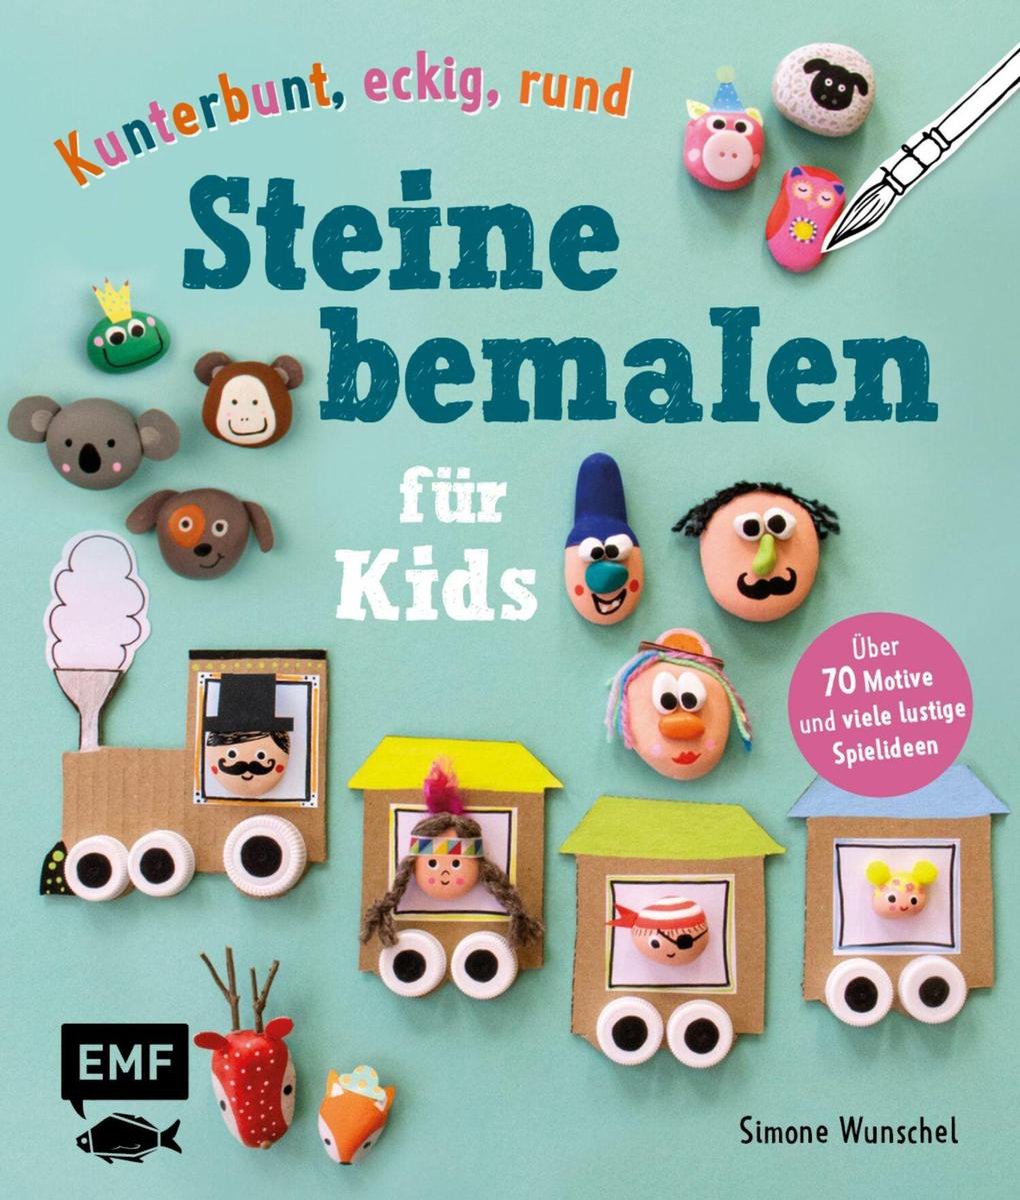 Kunterbunt, eckig, rund - Steine bemalen für Kids (ebook), Simone